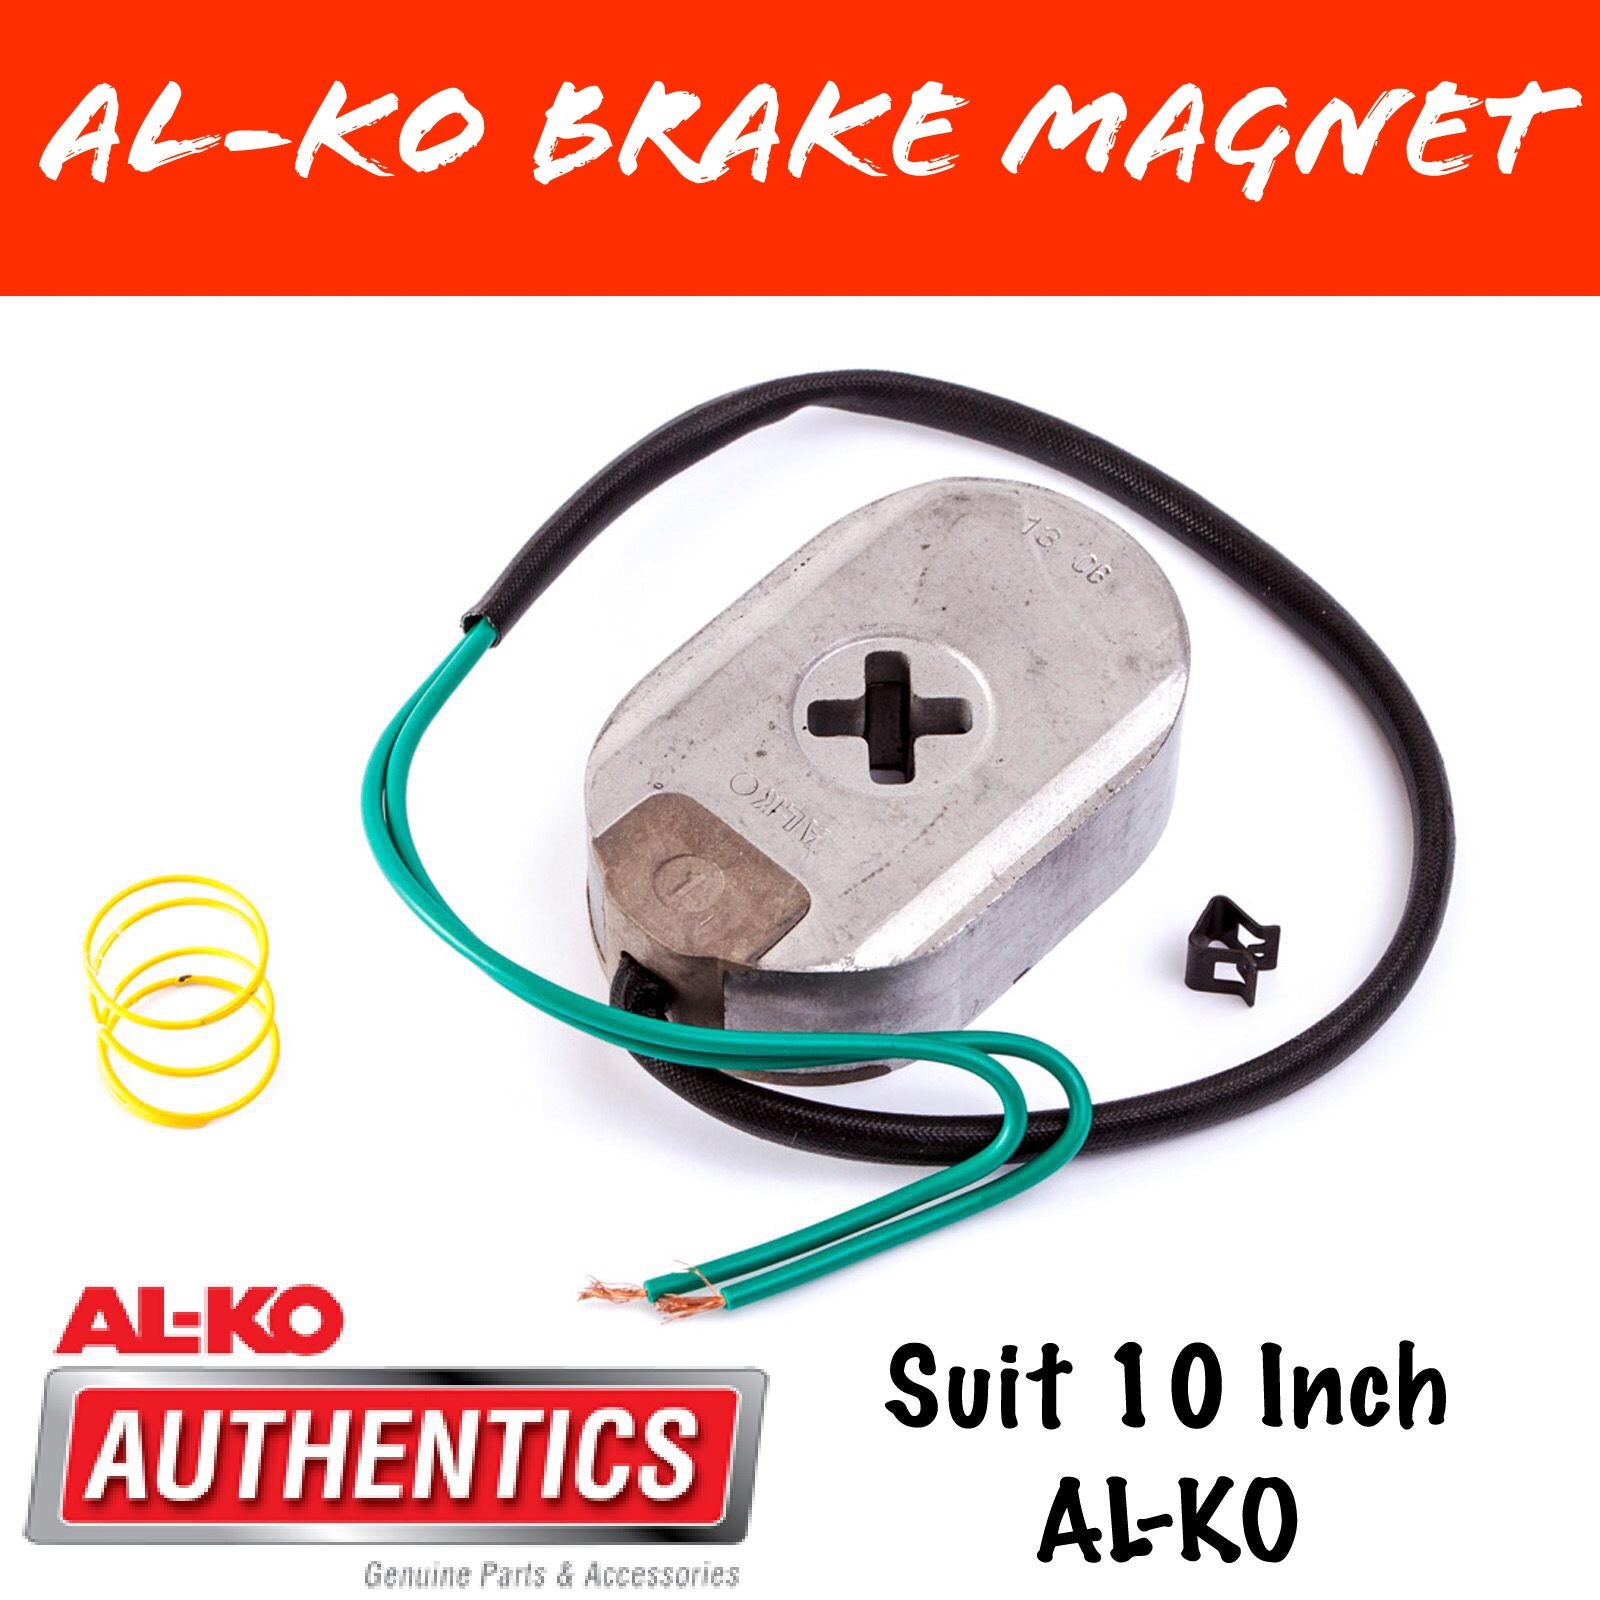 AL-KO 10 Inch Electric Brake Magnet